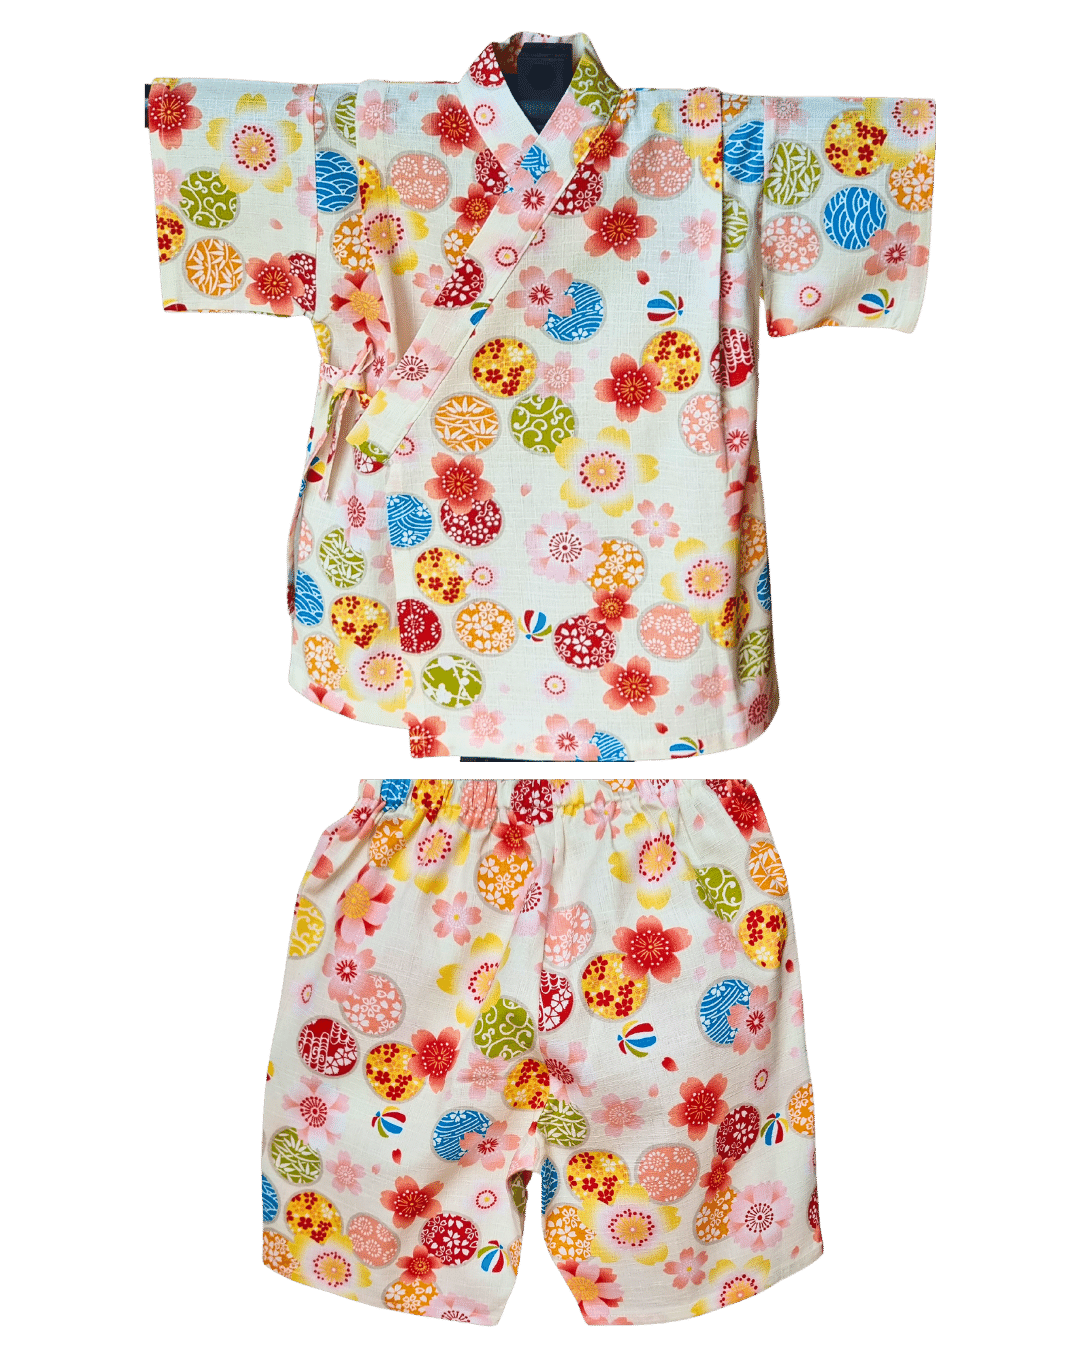 Jinbei Kinder japanische Muster